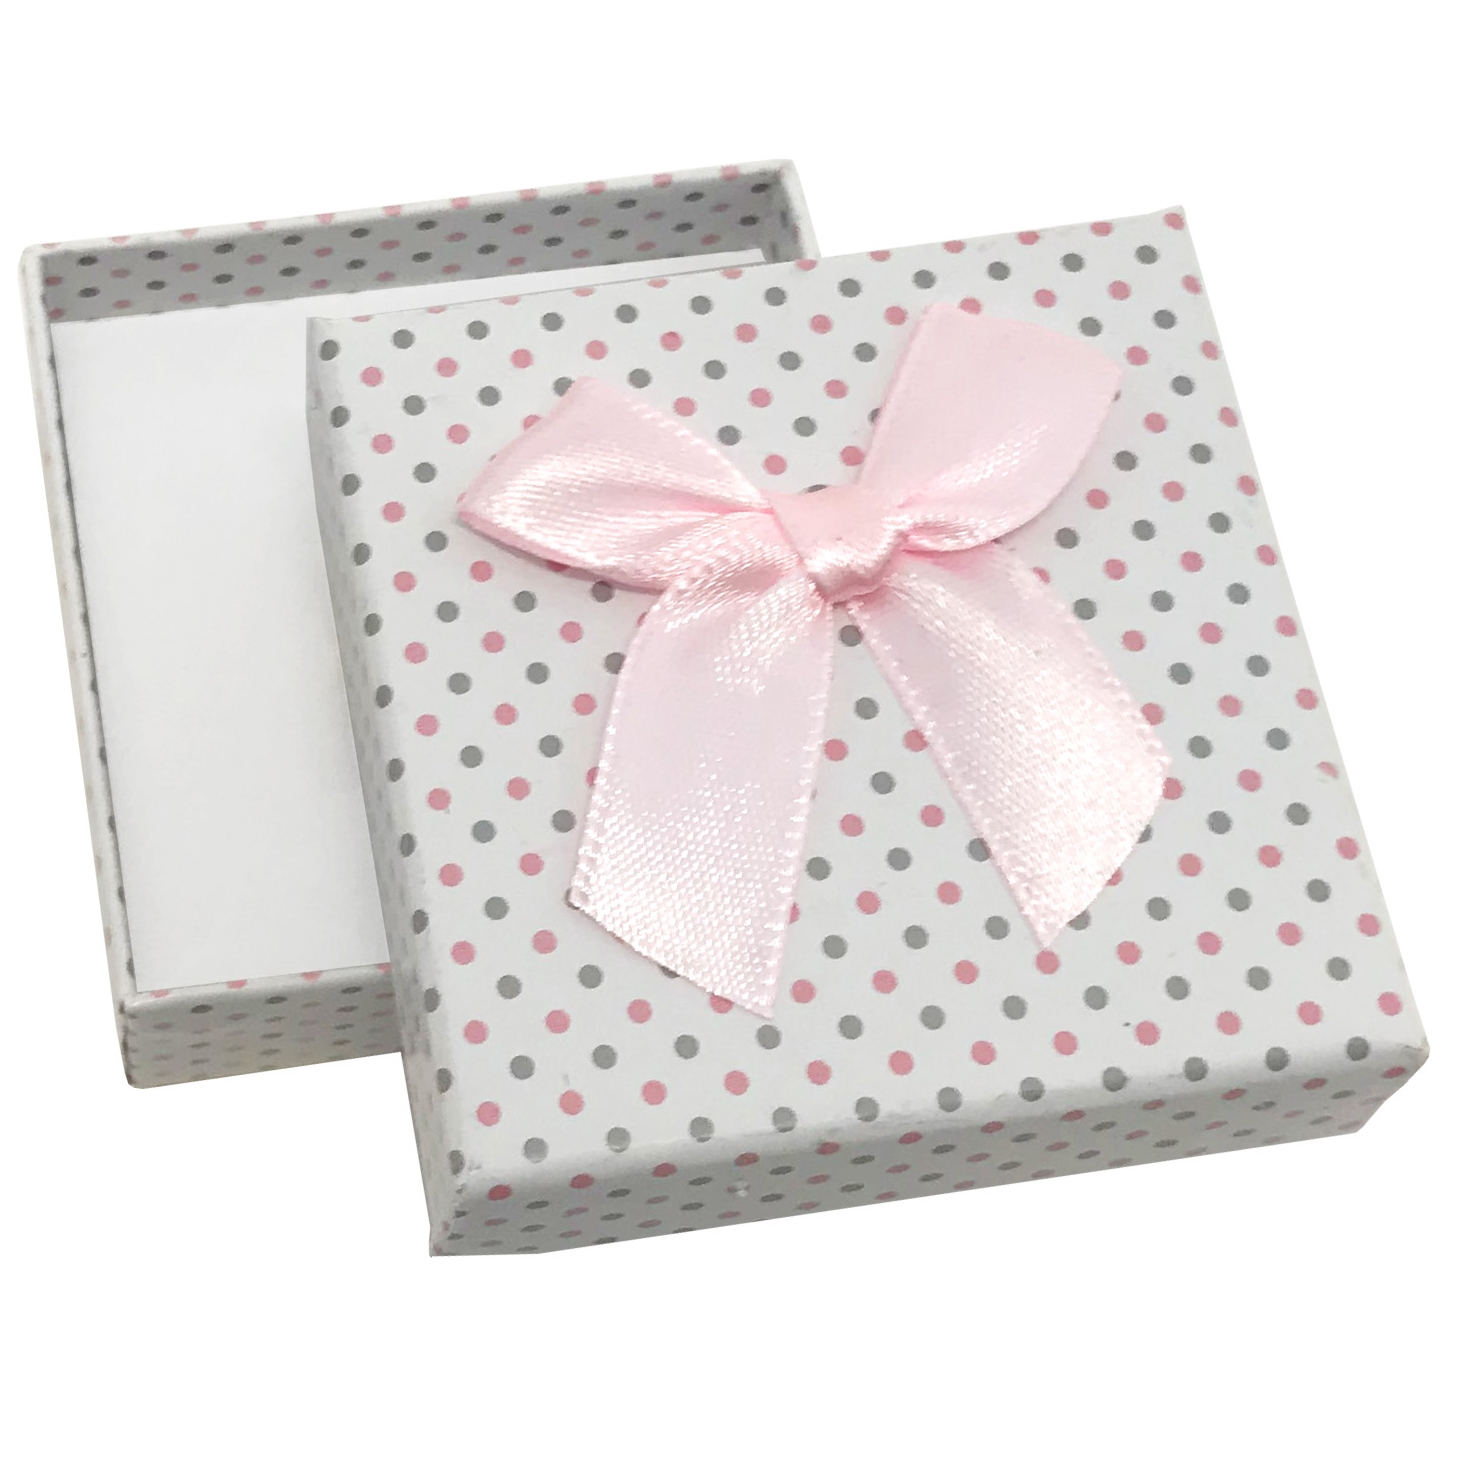 Škatuľka na súpravu šperkov biela, šedé a ružové bodky